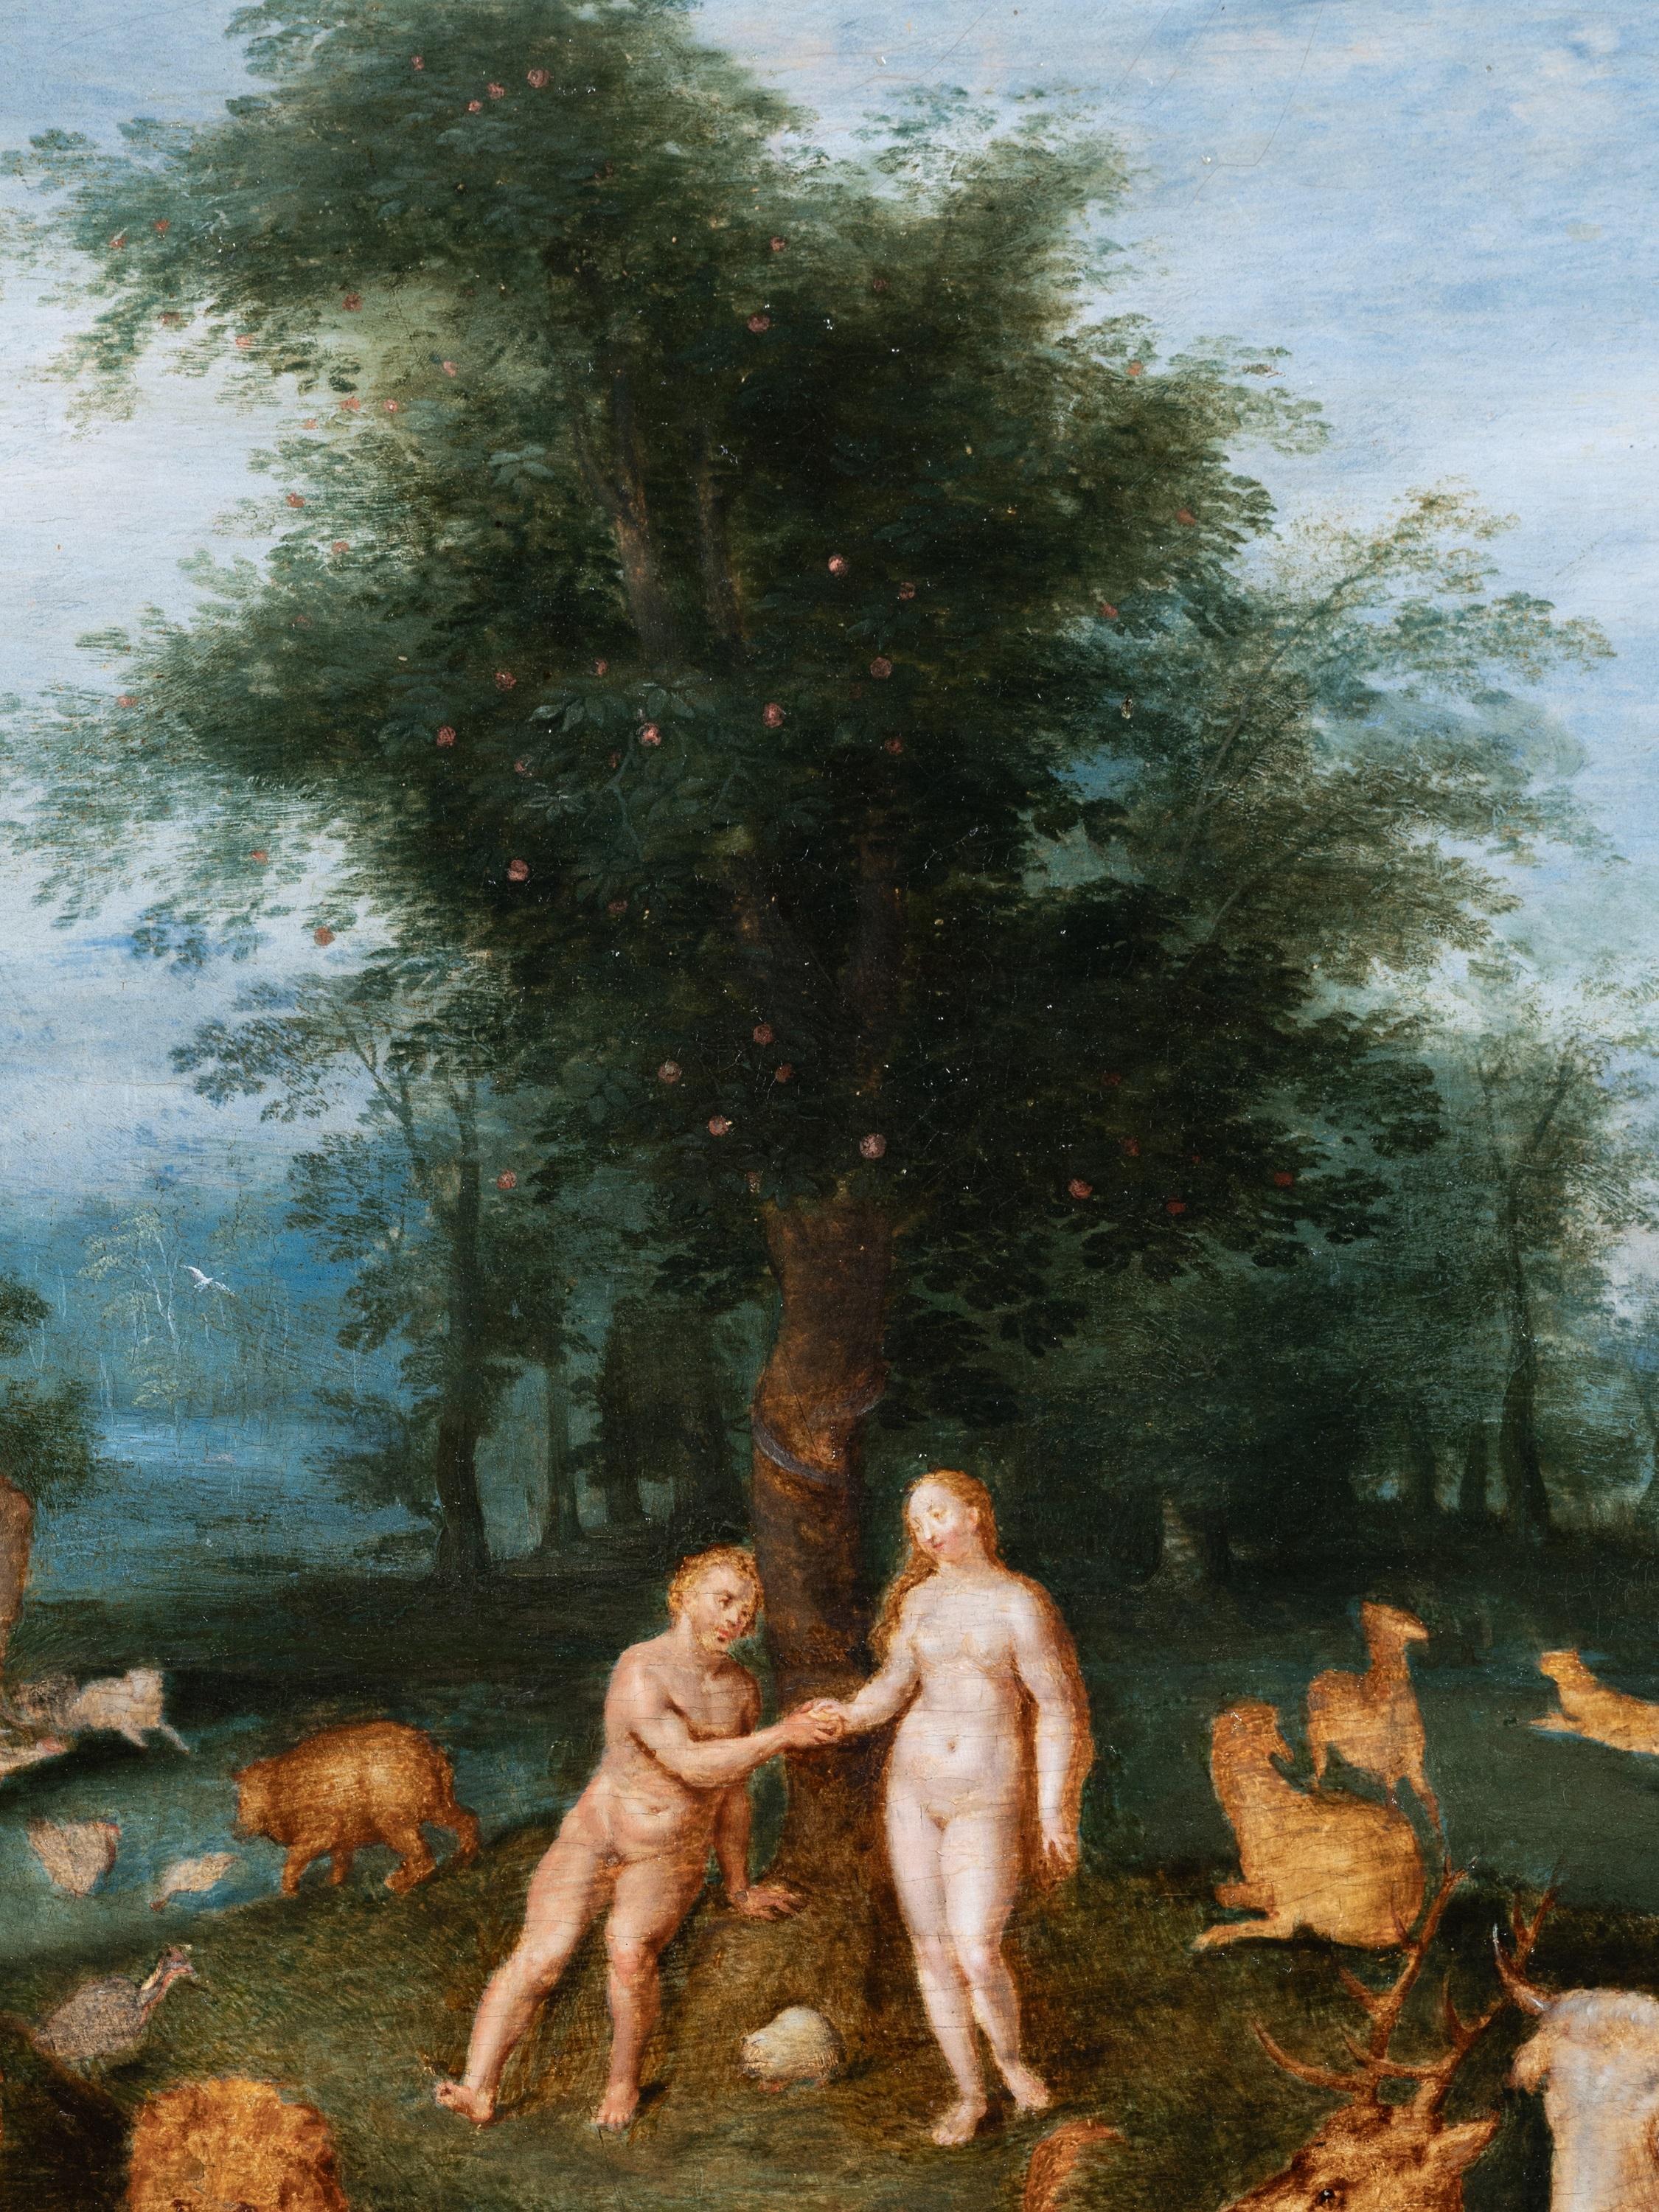 Adam et Ève au paradis, studio de Jan Brueghel le Jeune, 17e siècle - Maîtres anciens Painting par Studio of Jan Brueghel the Younger